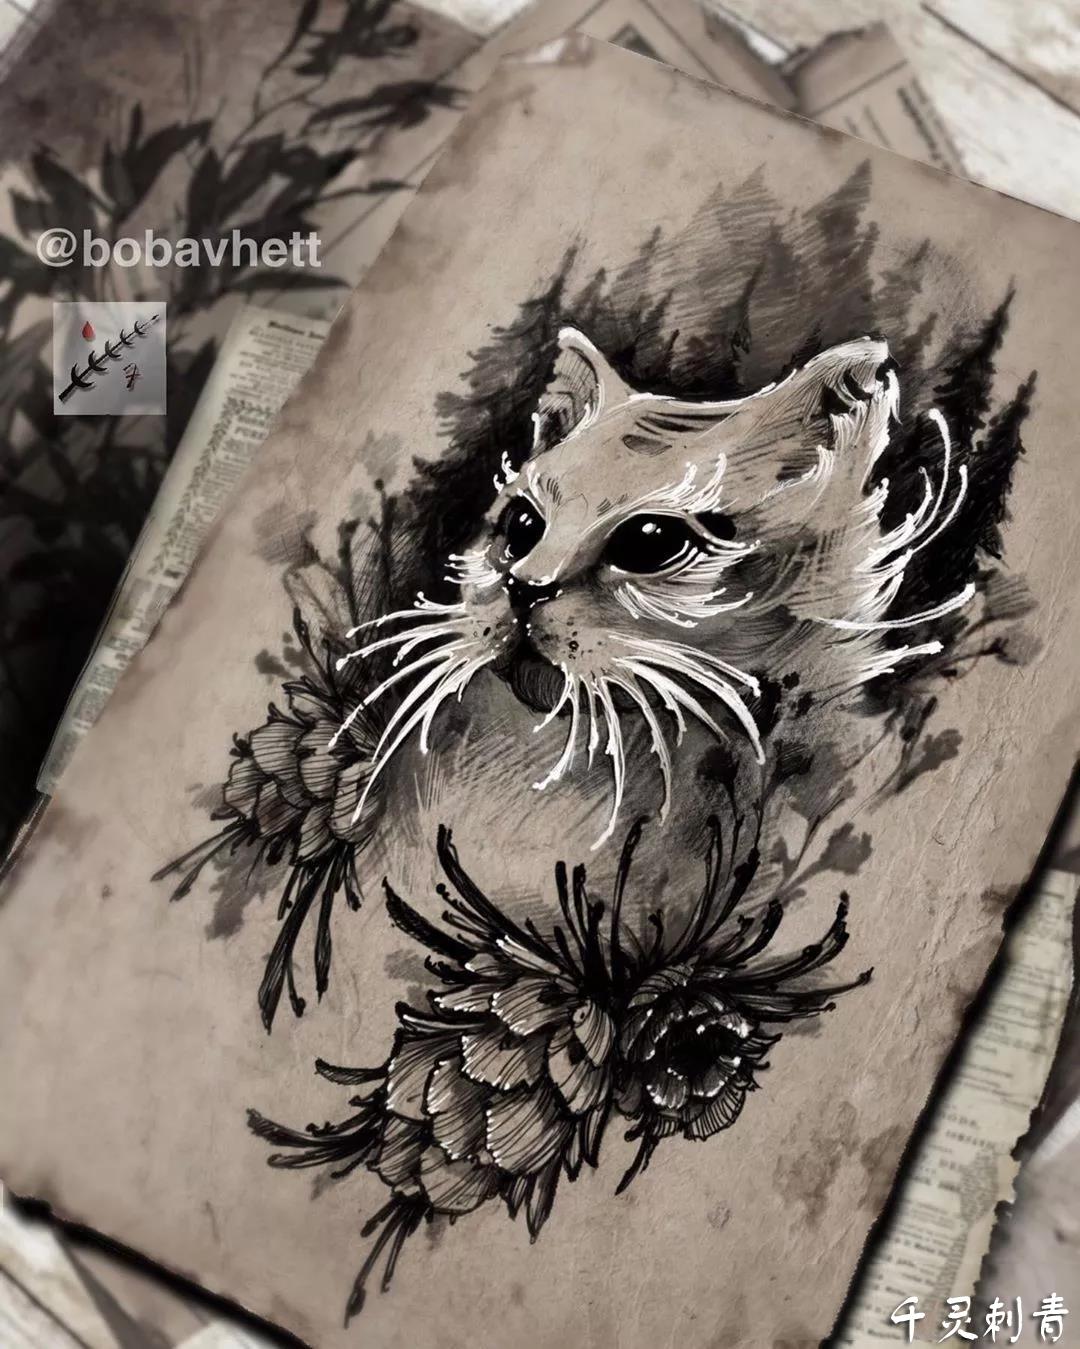 暗黑猫咪纹身,暗黑猫咪纹身手稿,暗黑猫咪纹身手稿图案